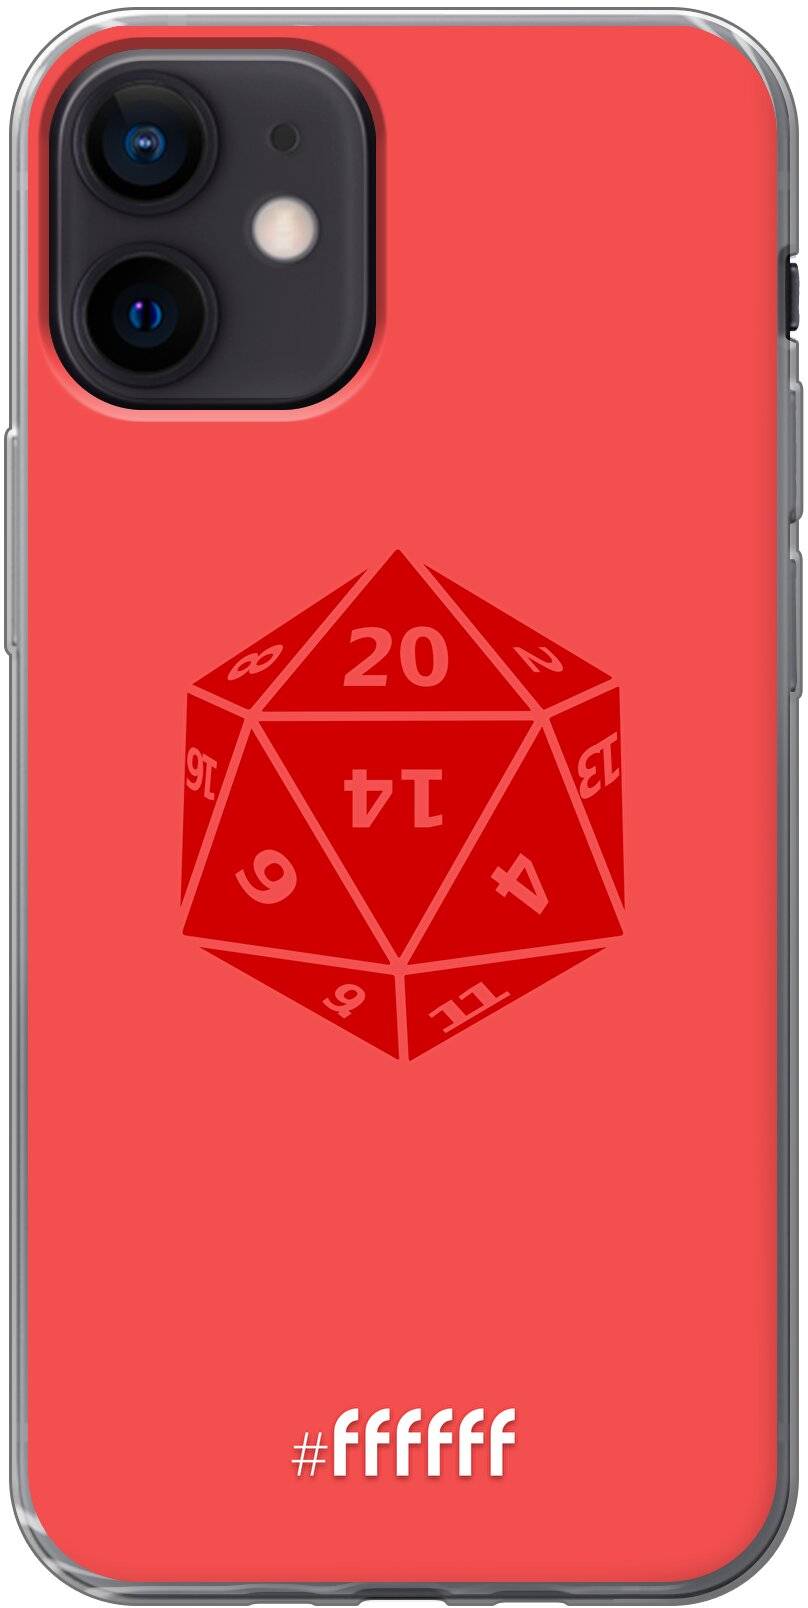 D20 - Red iPhone 12 Mini